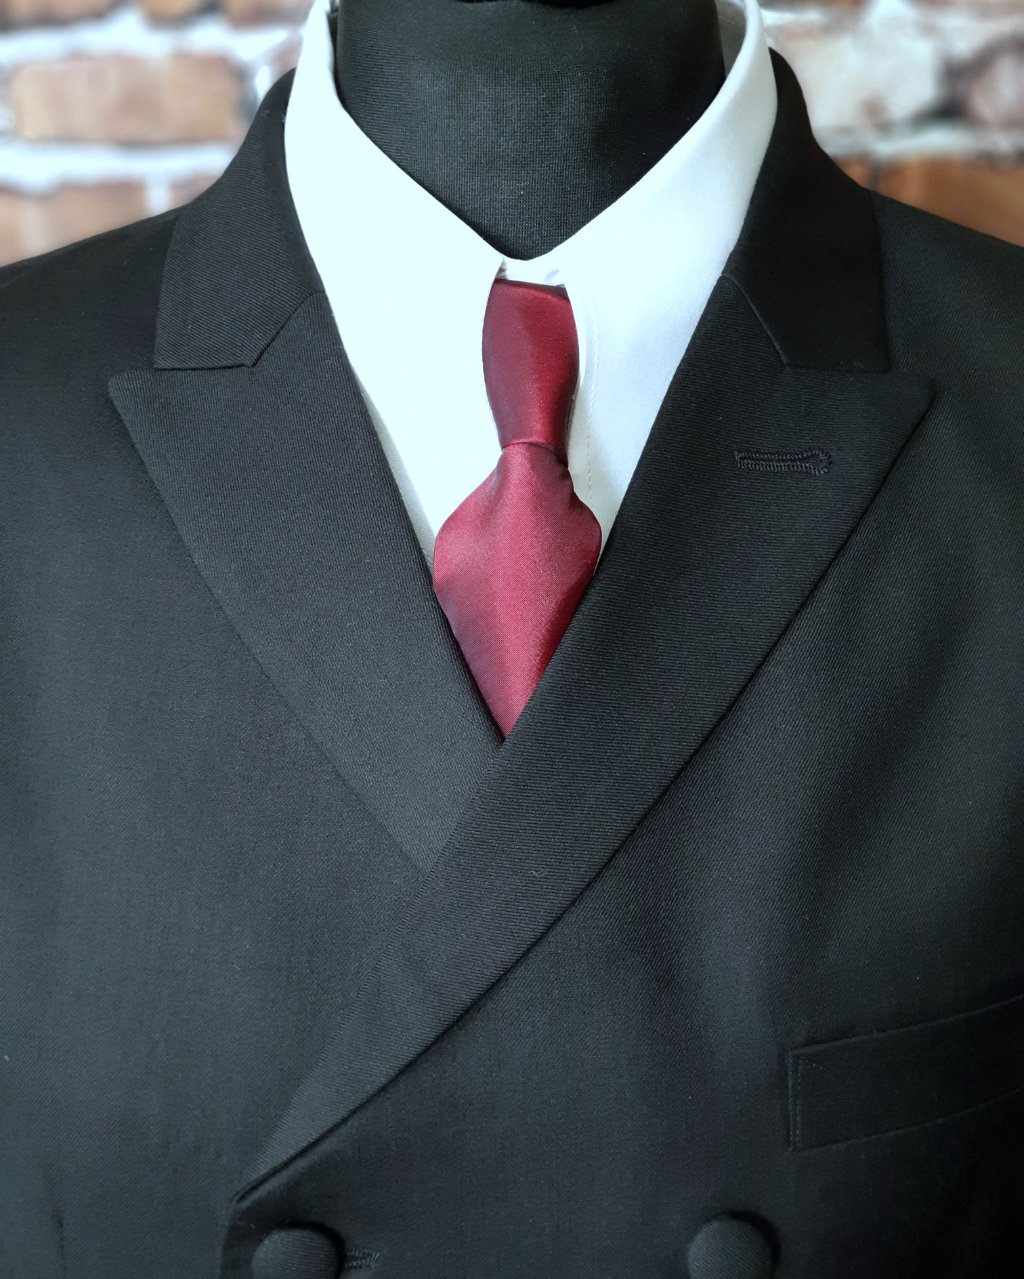 Double Breasted Suit Mod Suit Black 100% Wool Mix Plain Black Suit - Etsy